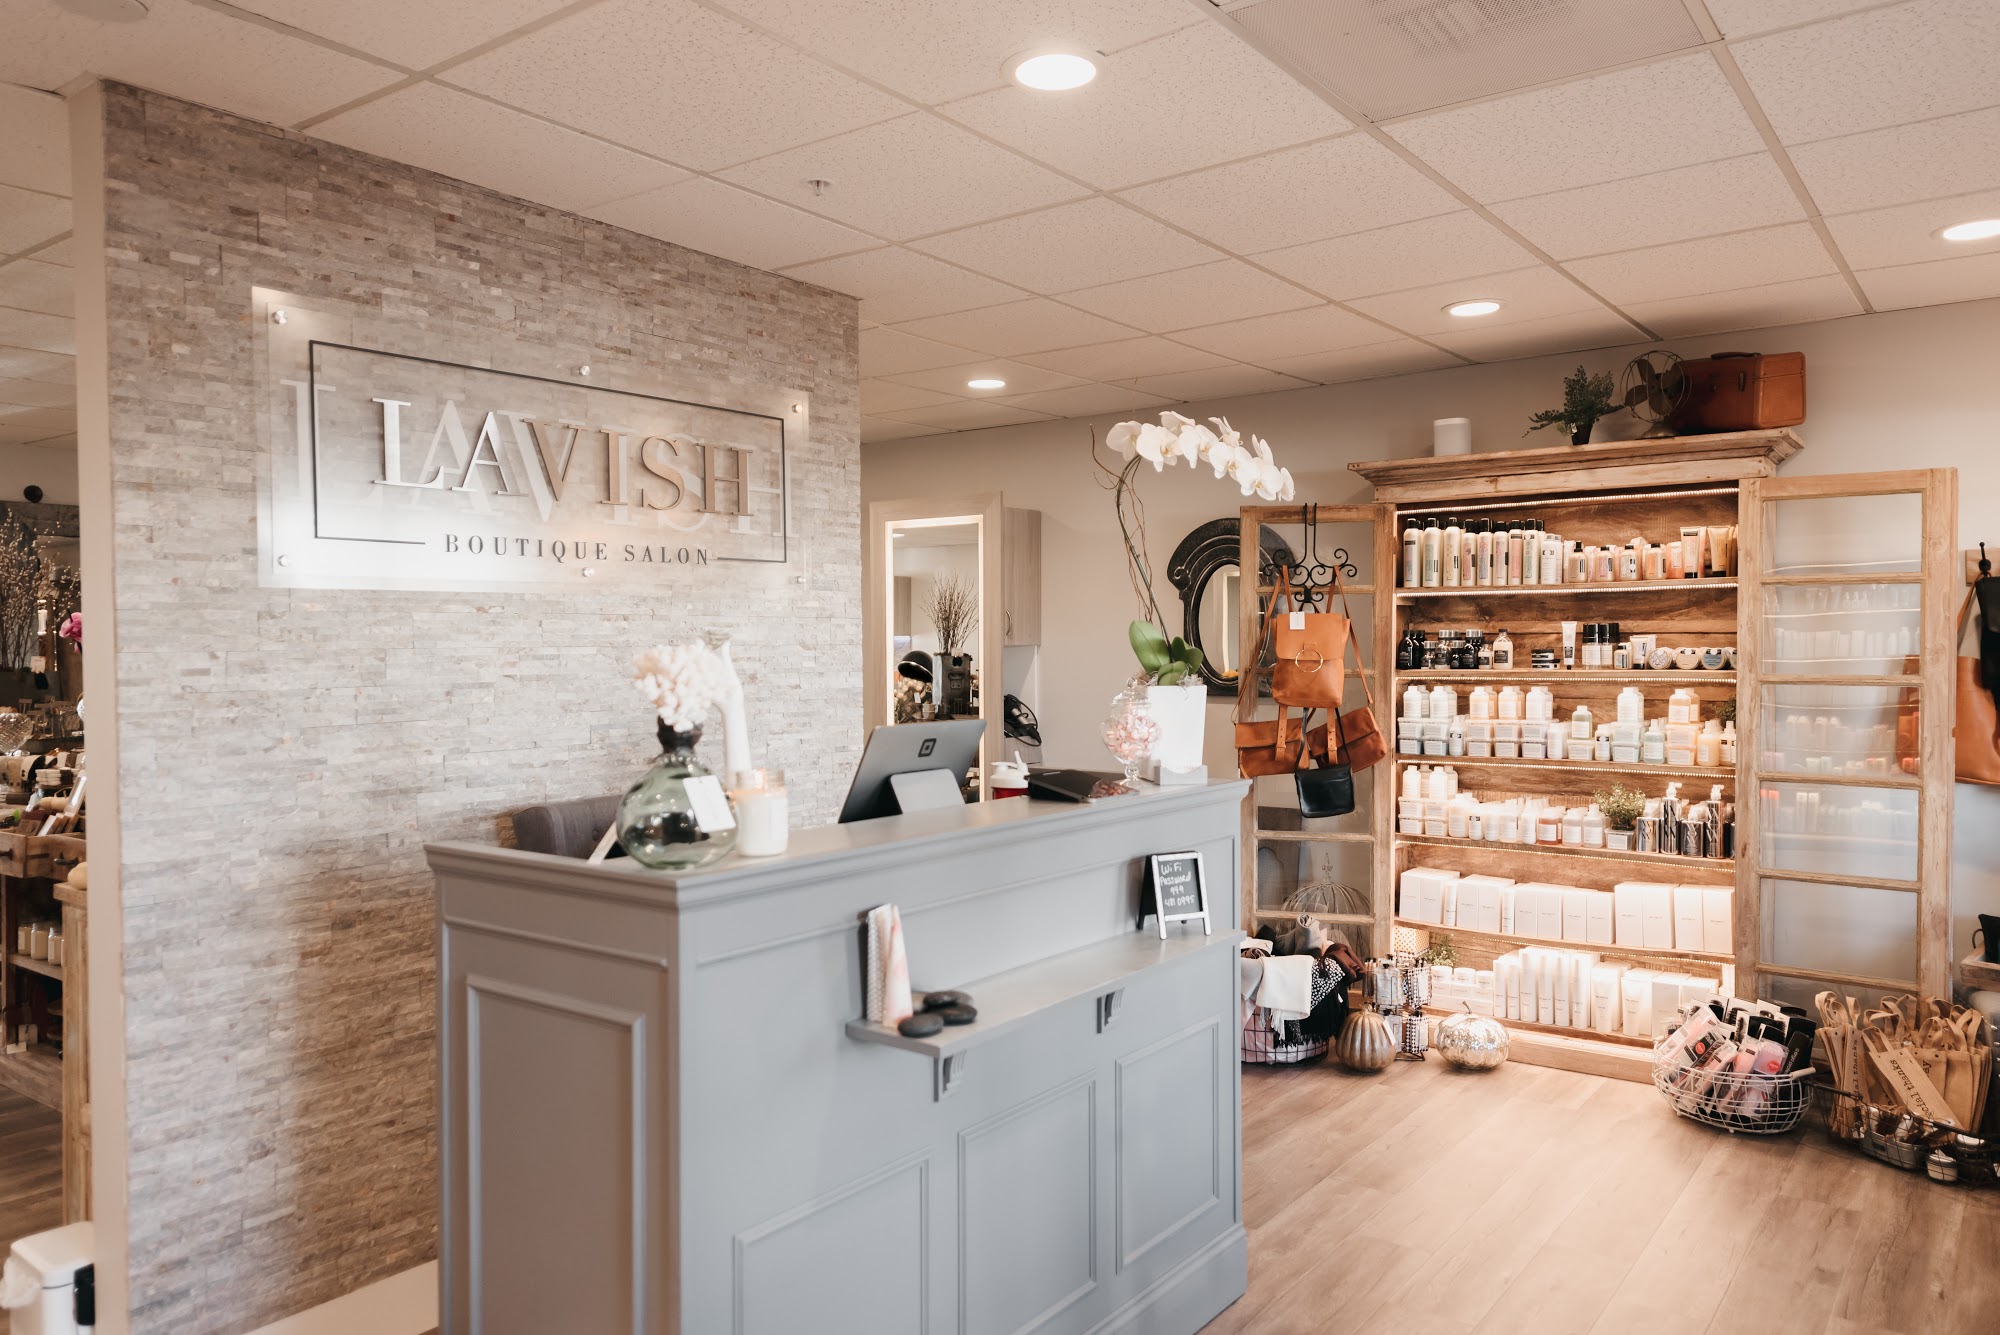 Lavish Boutique Salon